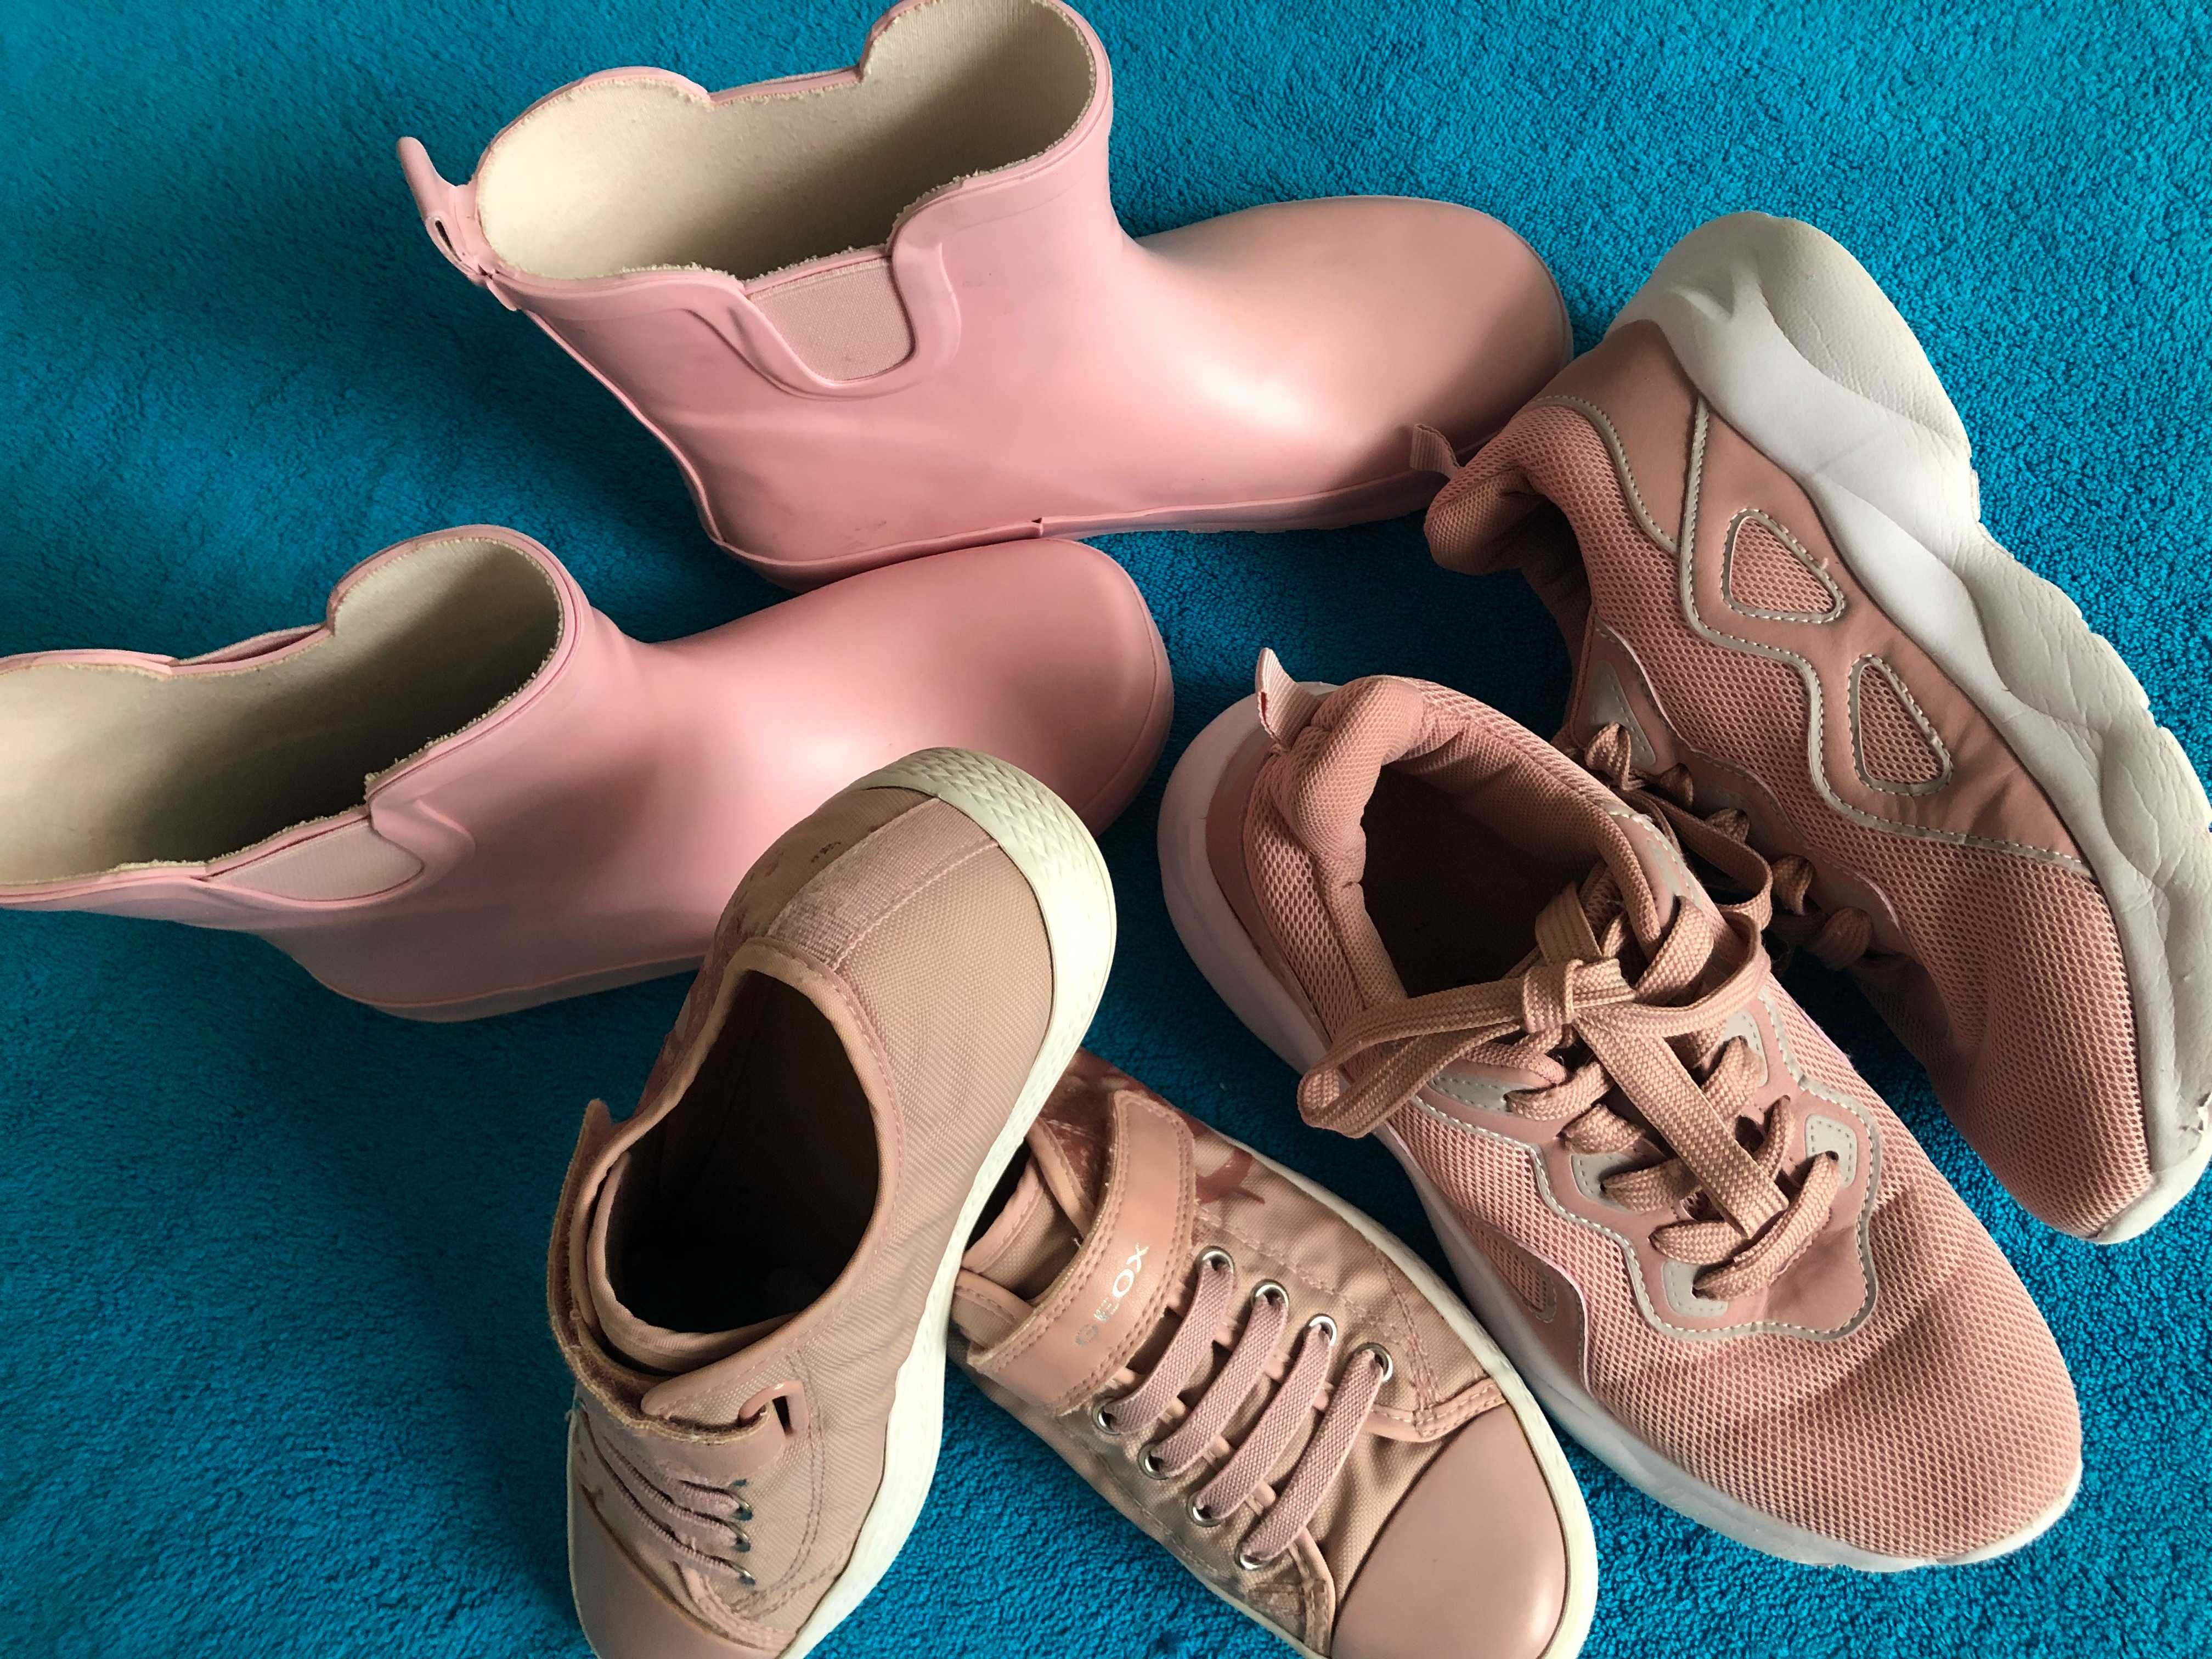 Кроссовки розовые балетки туфли босоножки сапожки резино 33-34-36 раз.